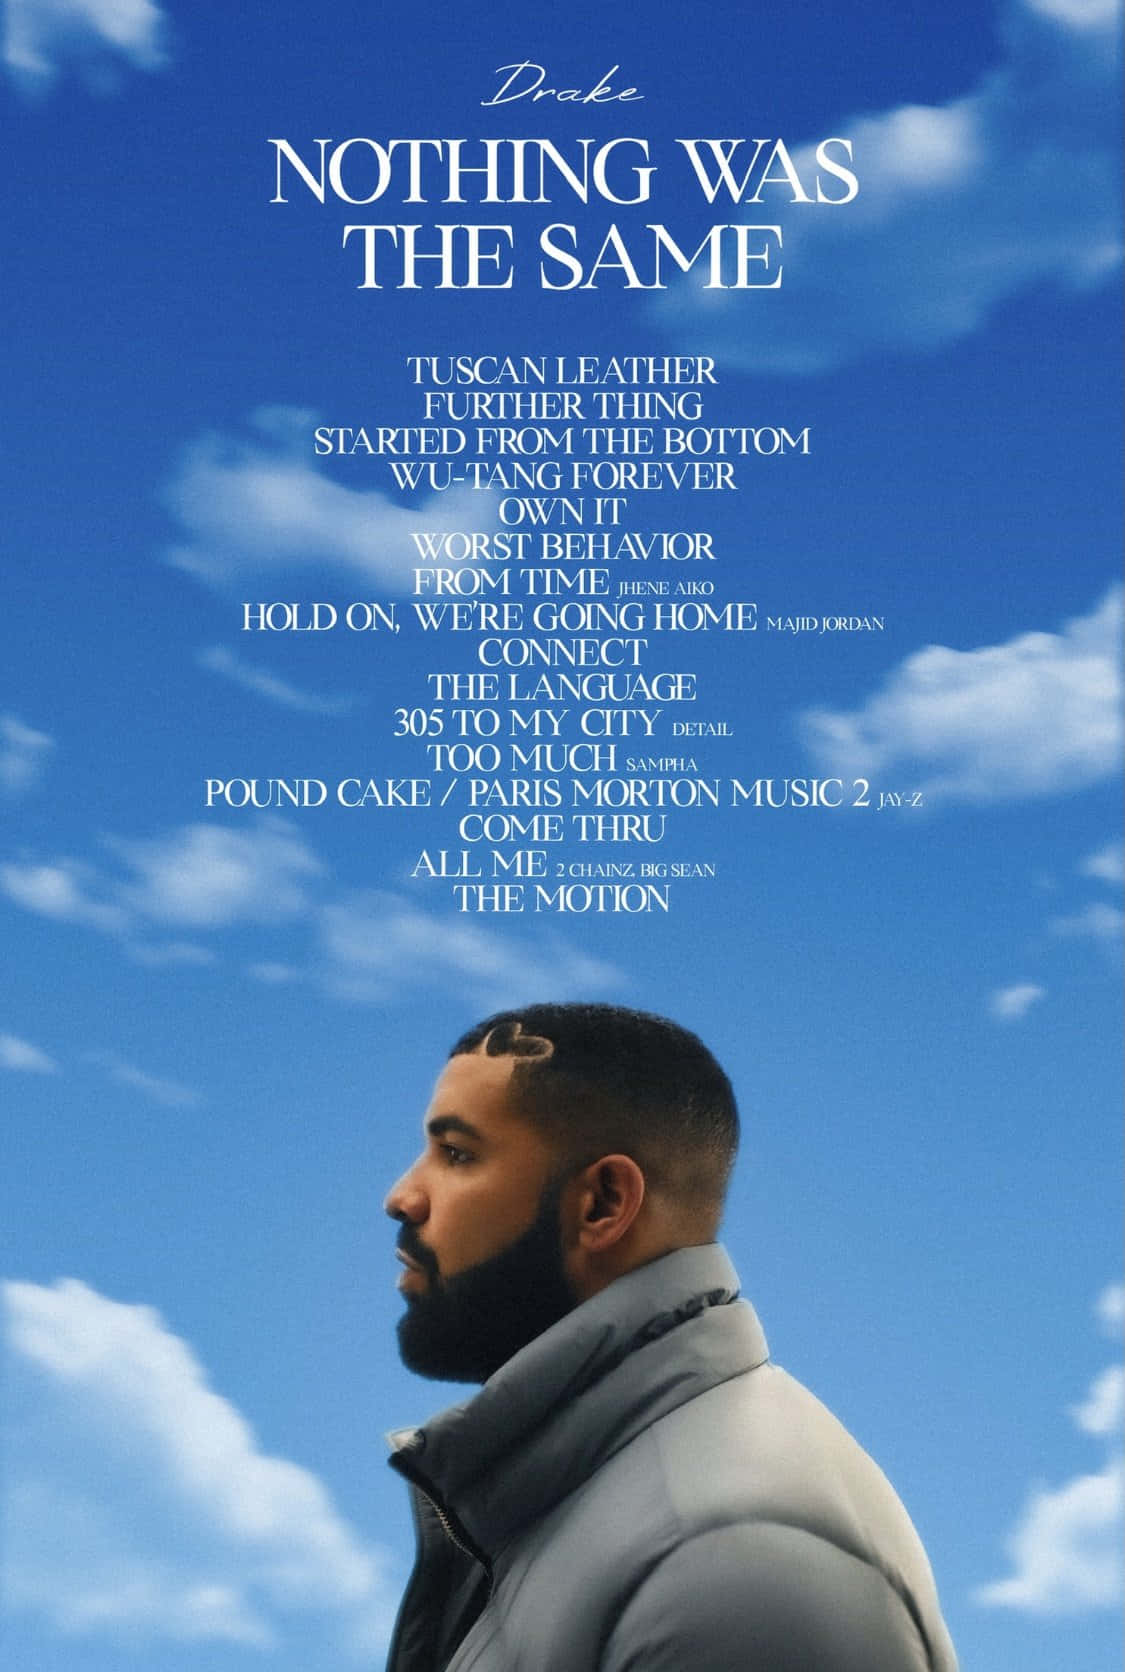 Føl energien fra Drake og hans album 